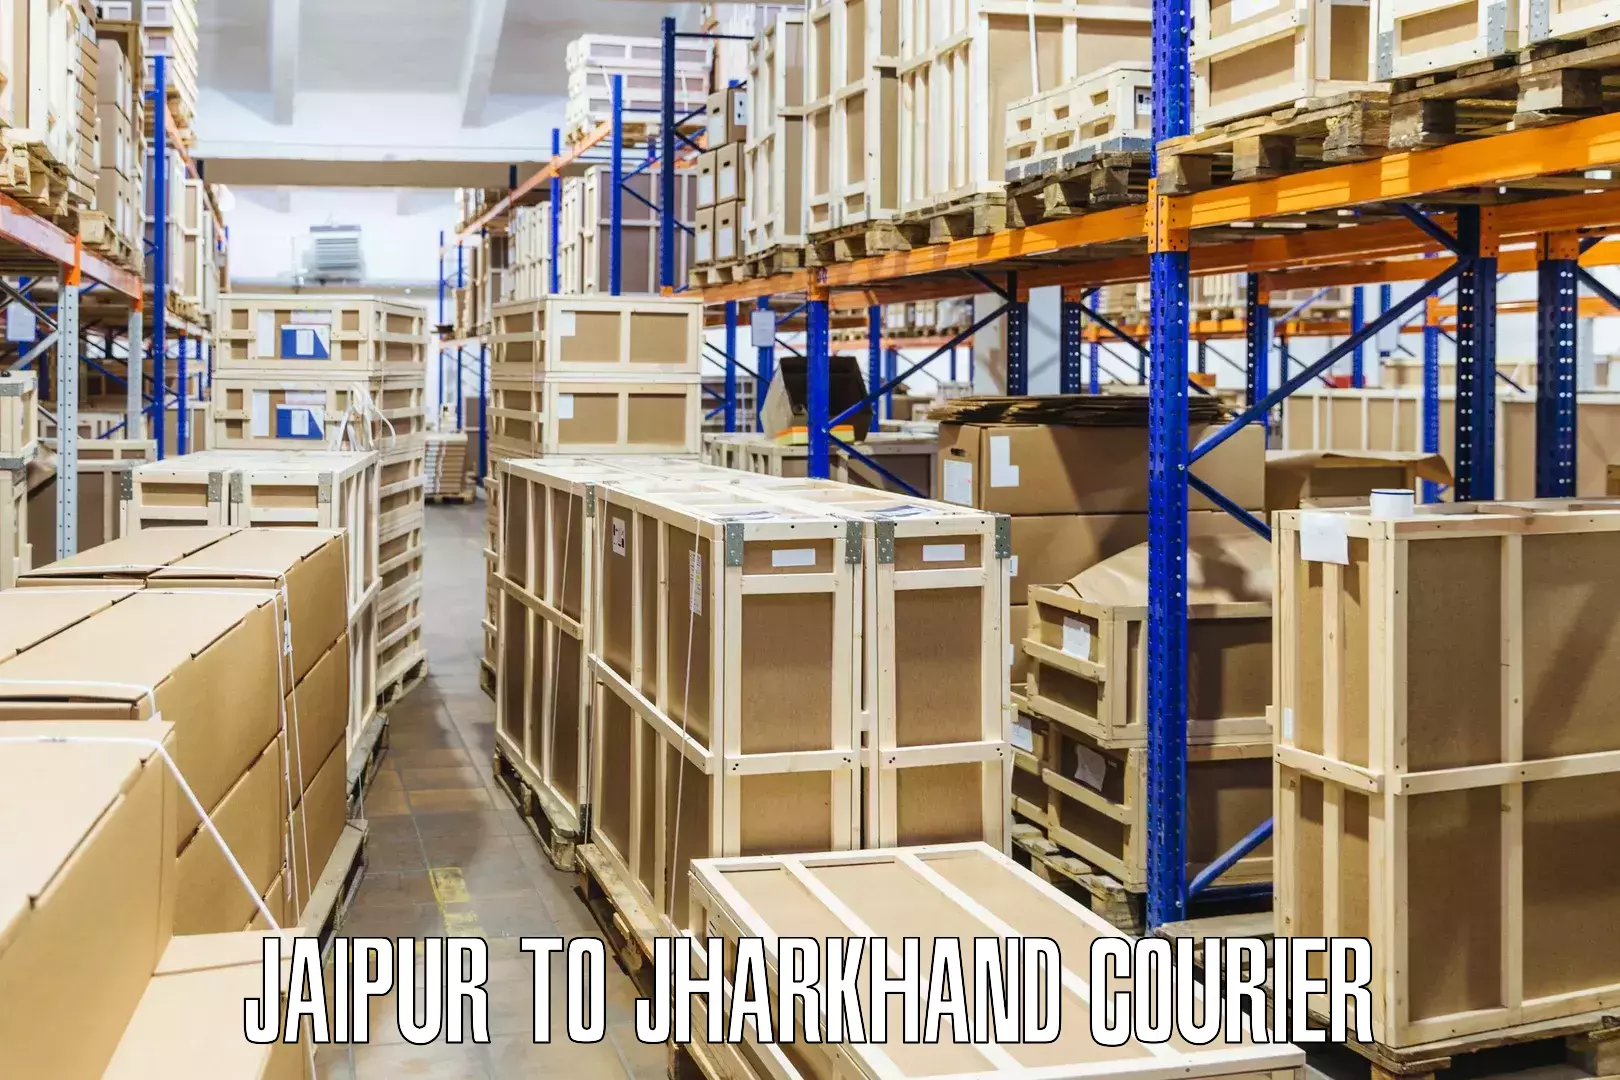 Efficient parcel service Jaipur to Garhwa